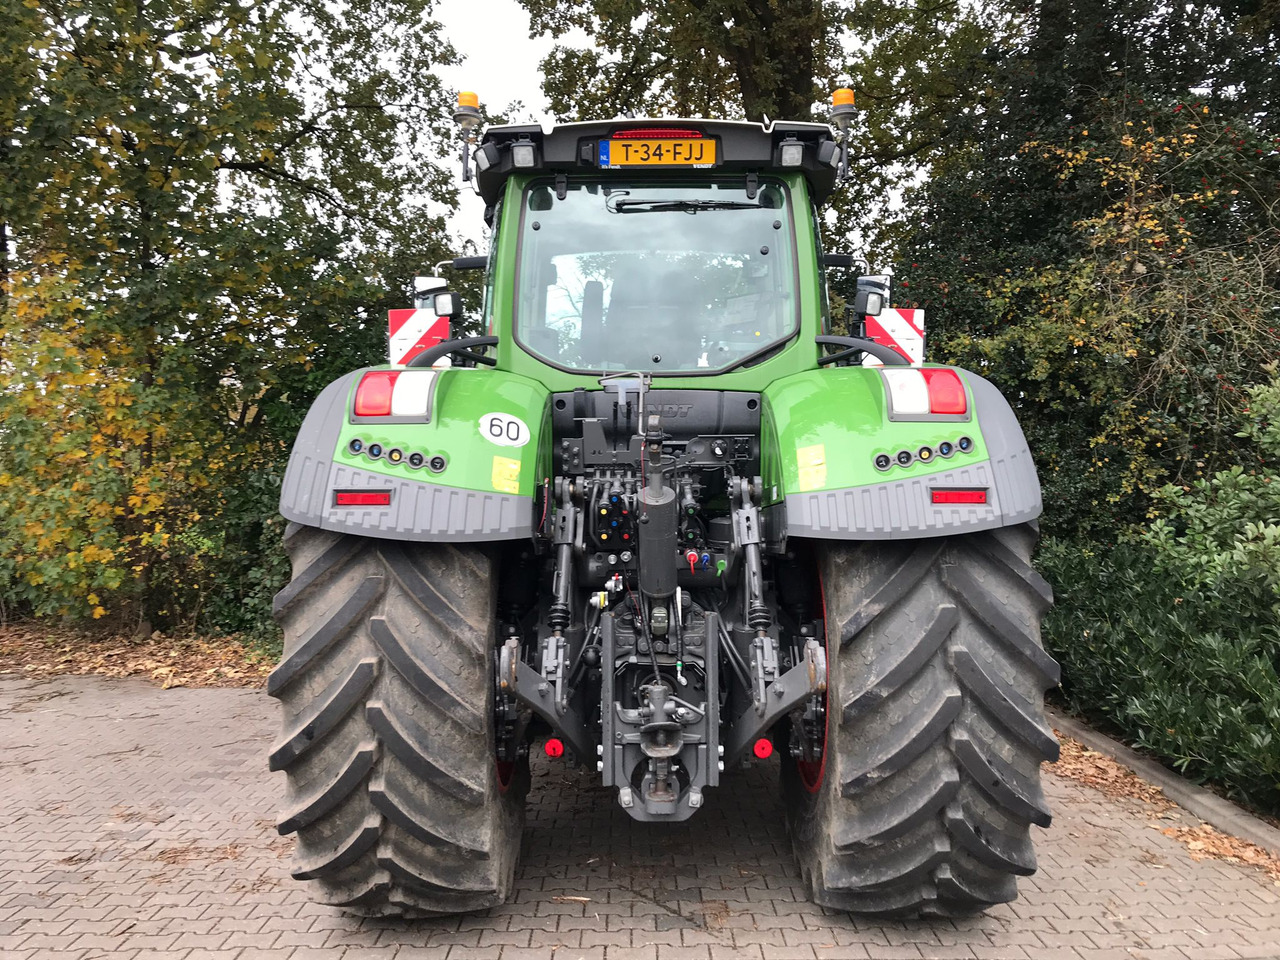 Farm tractor Fendt 933 Vario Gen6 ProfiPlus